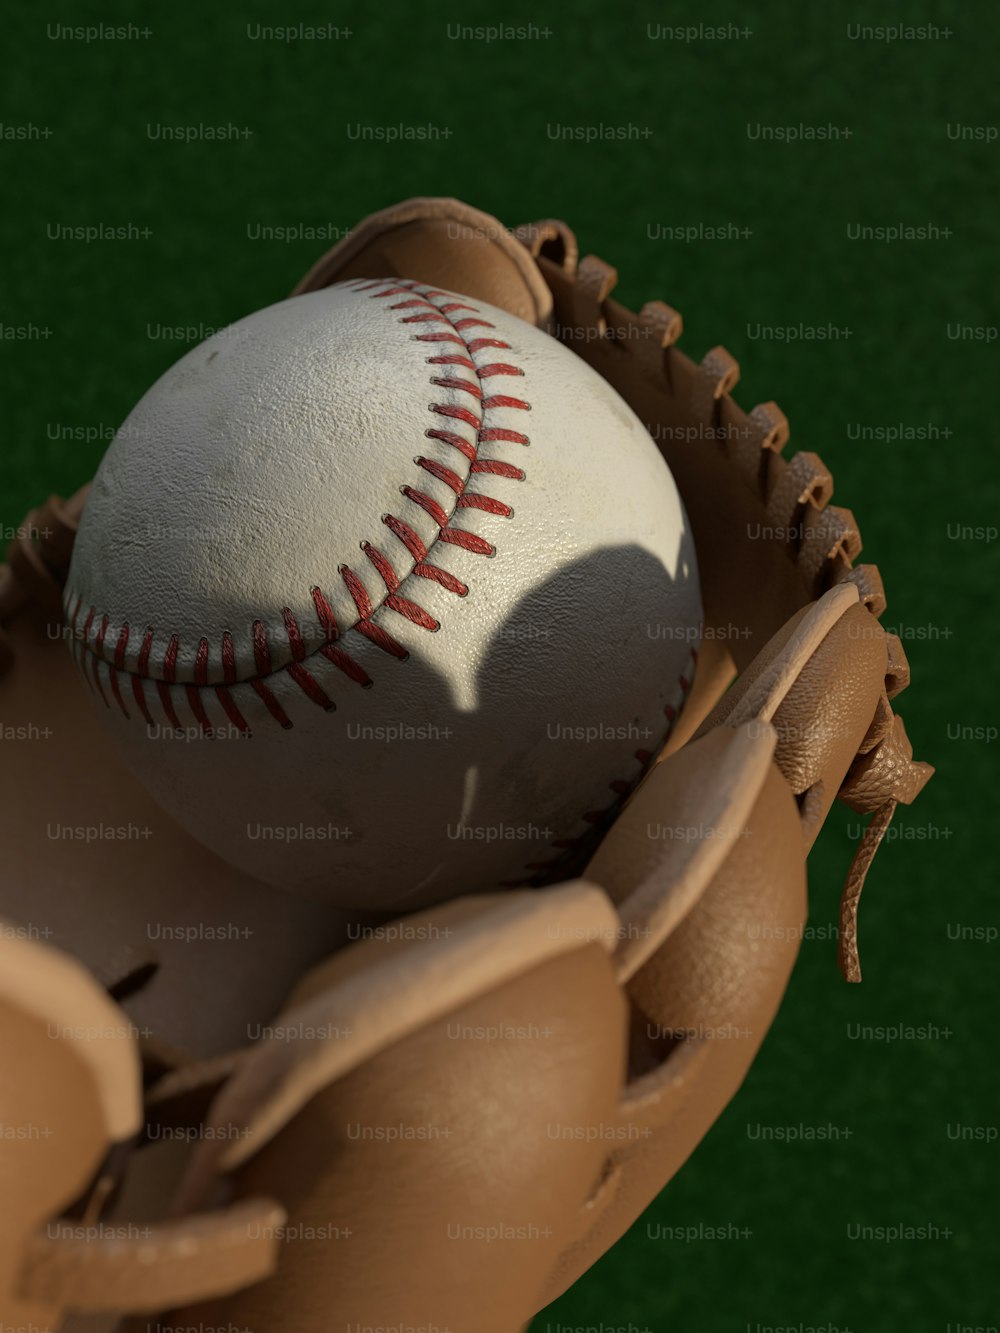 Una palla da baseball in un guanto su un campo verde